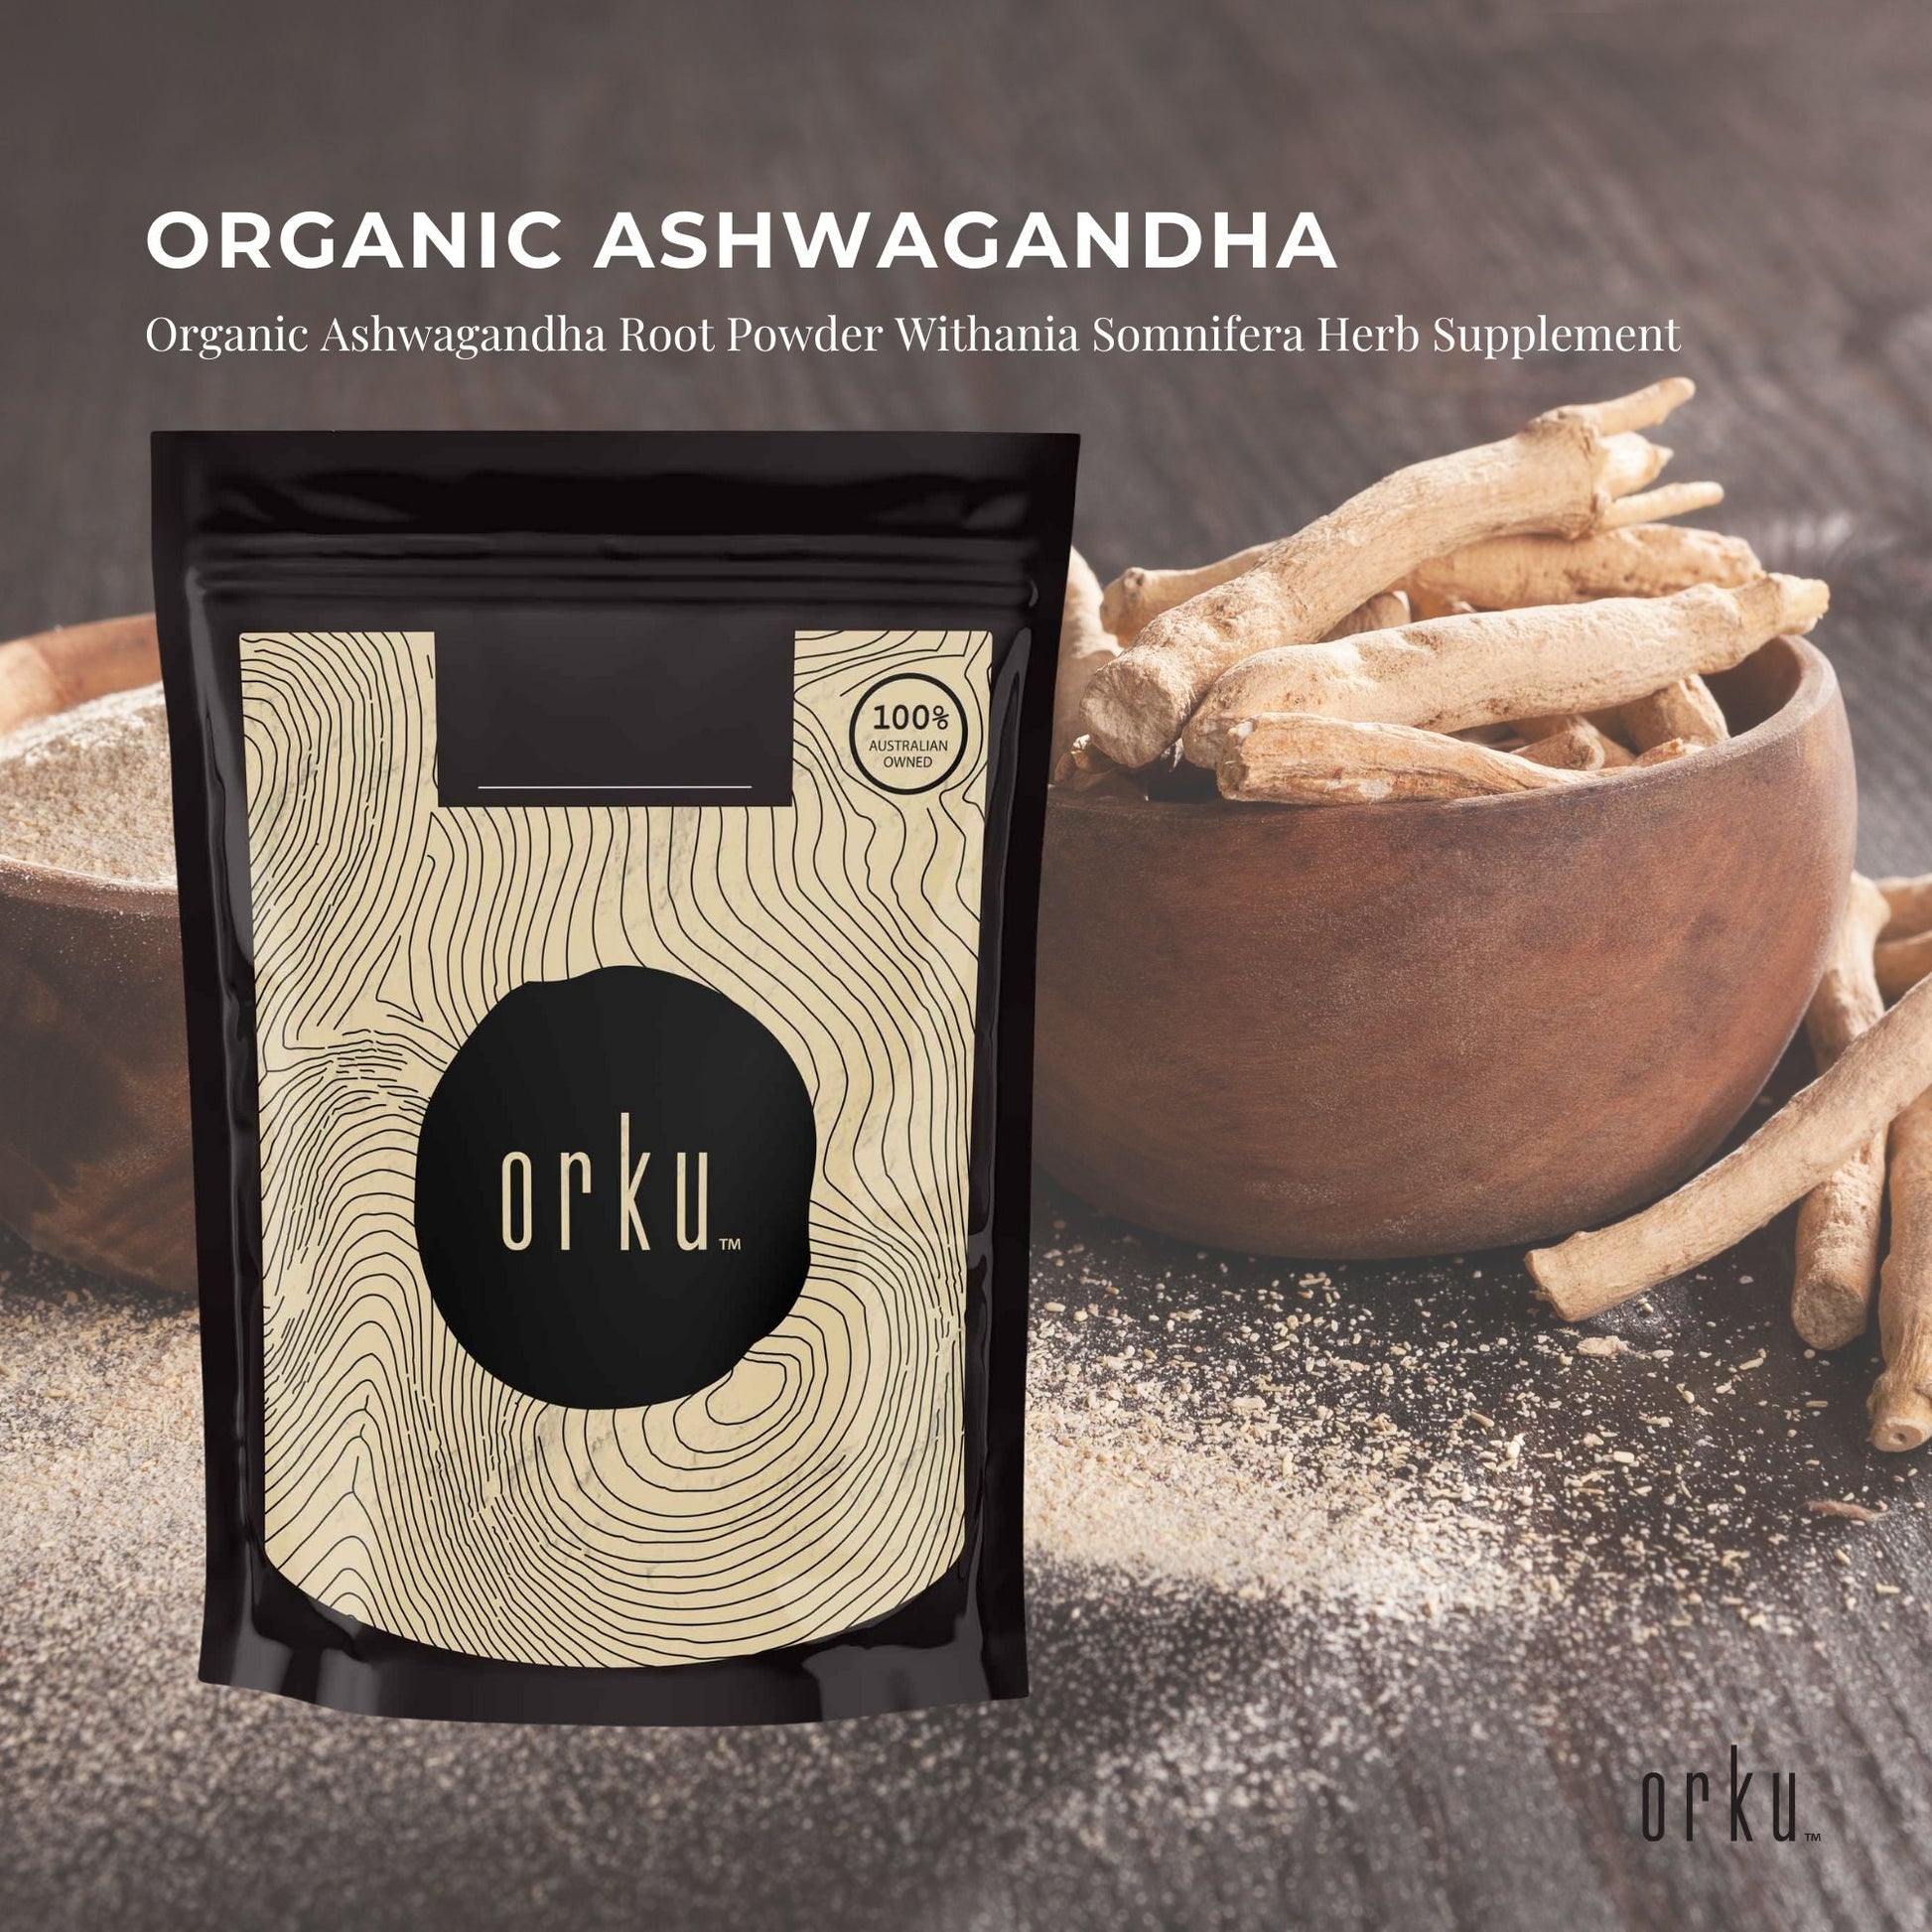 2Kg Organic Ashwagandha Root Powder Withania Somnifera Herb Supplement